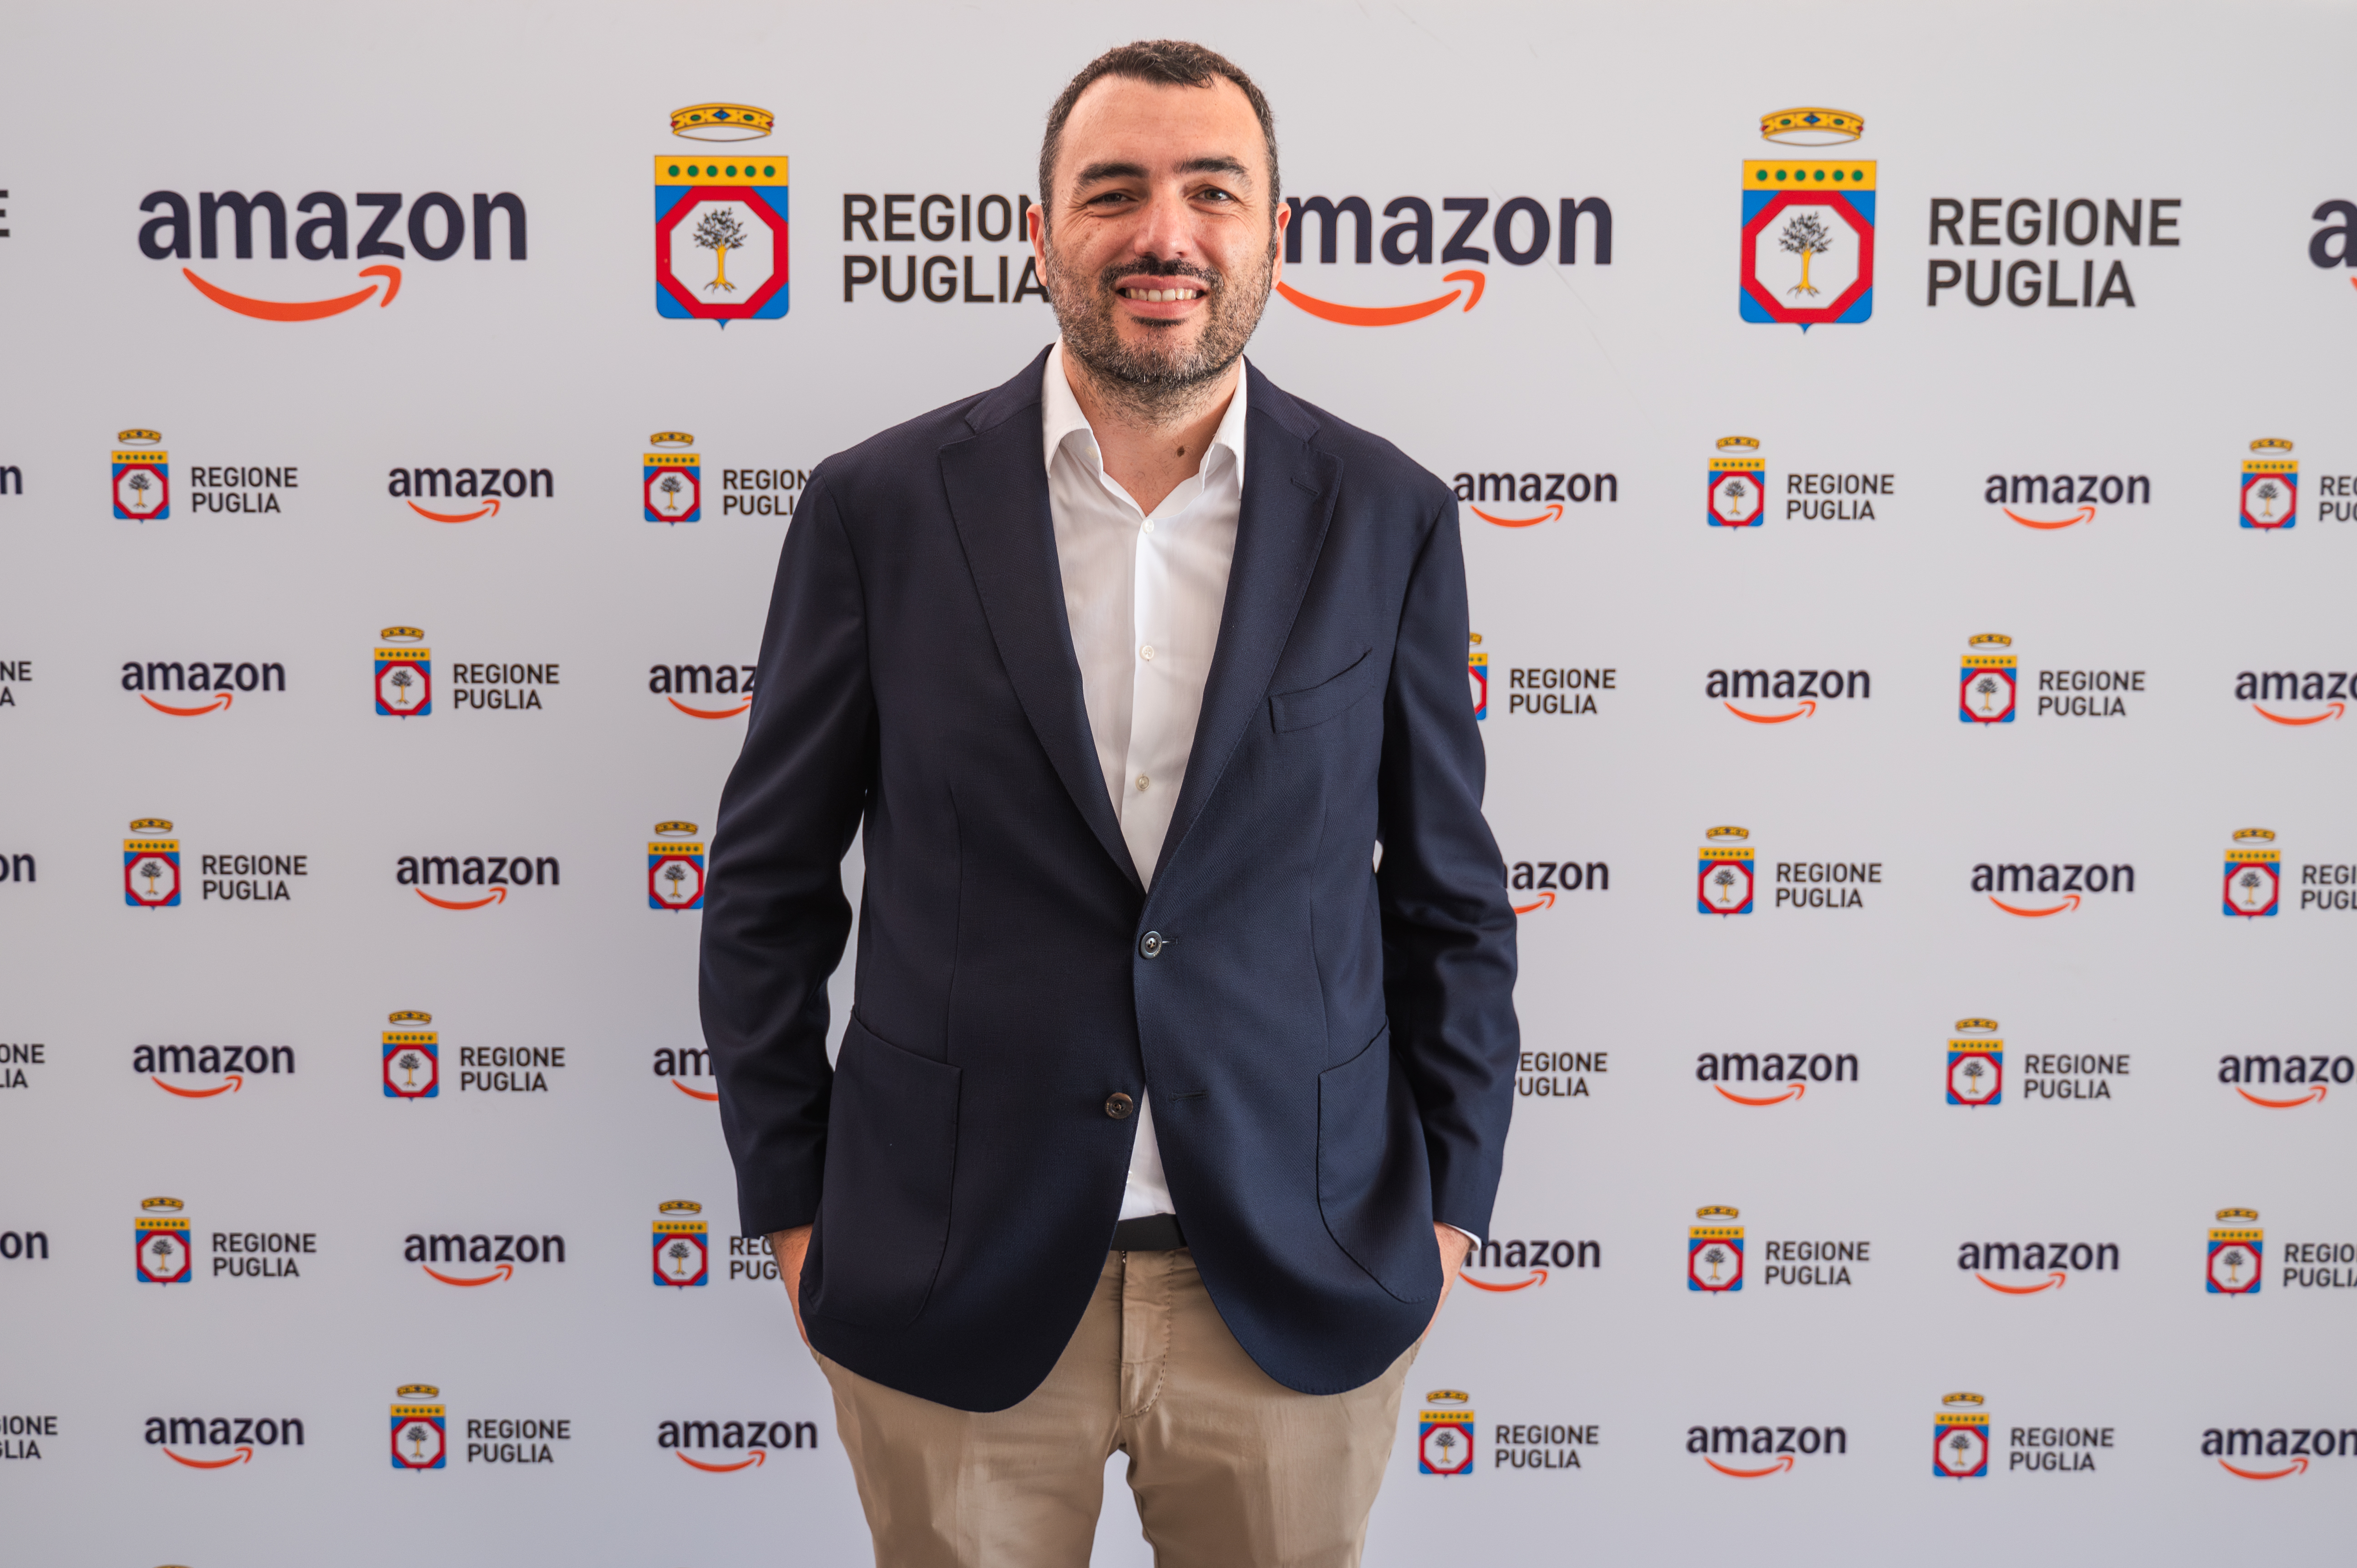 Galleria Amazon al fianco di Regione Puglia per sostenere la digitalizzazione e l’internazionalizzazione delle piccole e medie imprese del territorio - Diapositiva 9 di 9